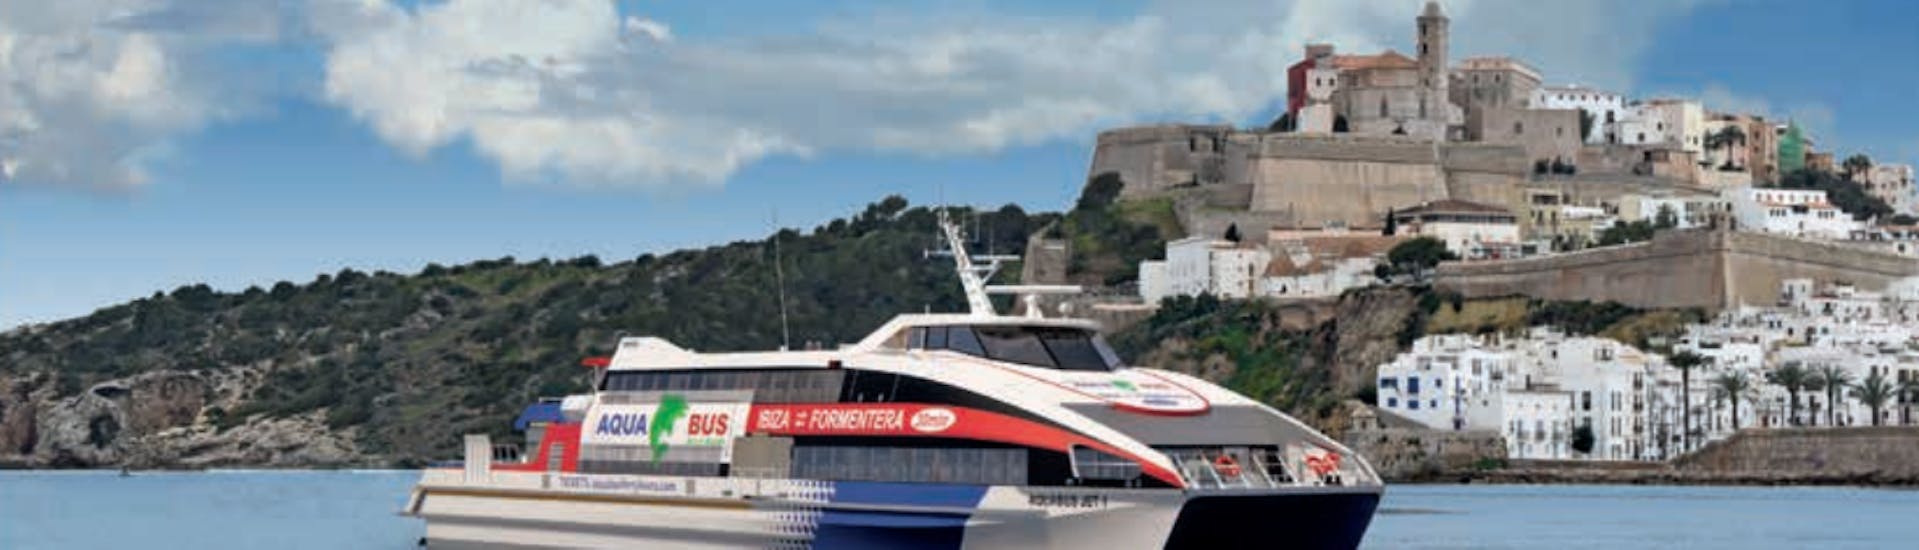 Boot von Aquabus Ferry Boats Ibiza mit Ibiza Stadt im Hintergrund.